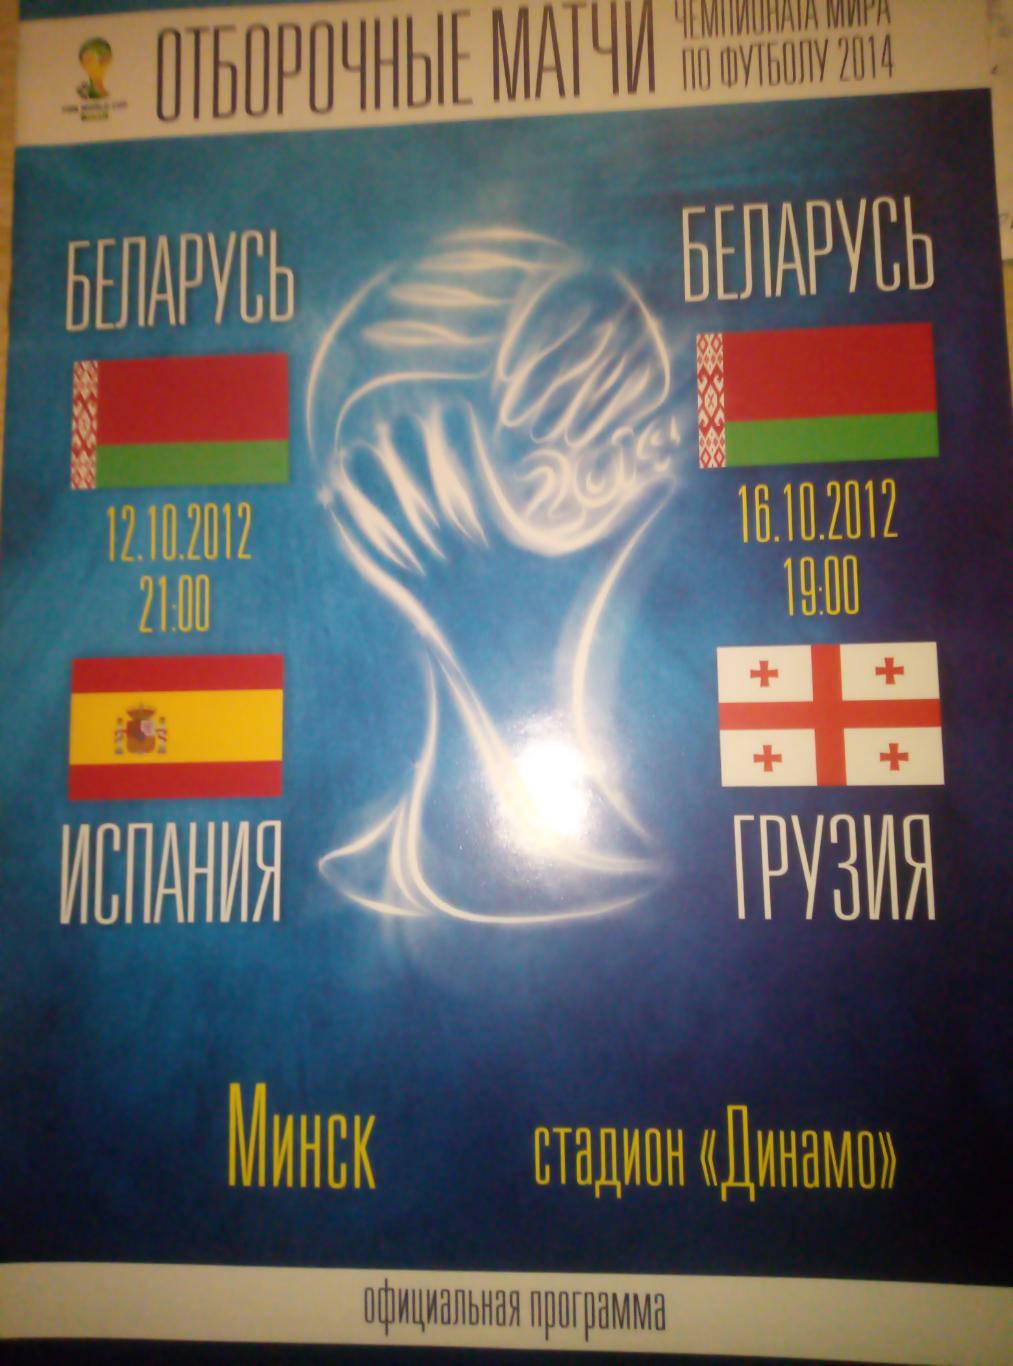 Беларусь - Испания + Грузия - 12/16.10.2012 (размер А-4)